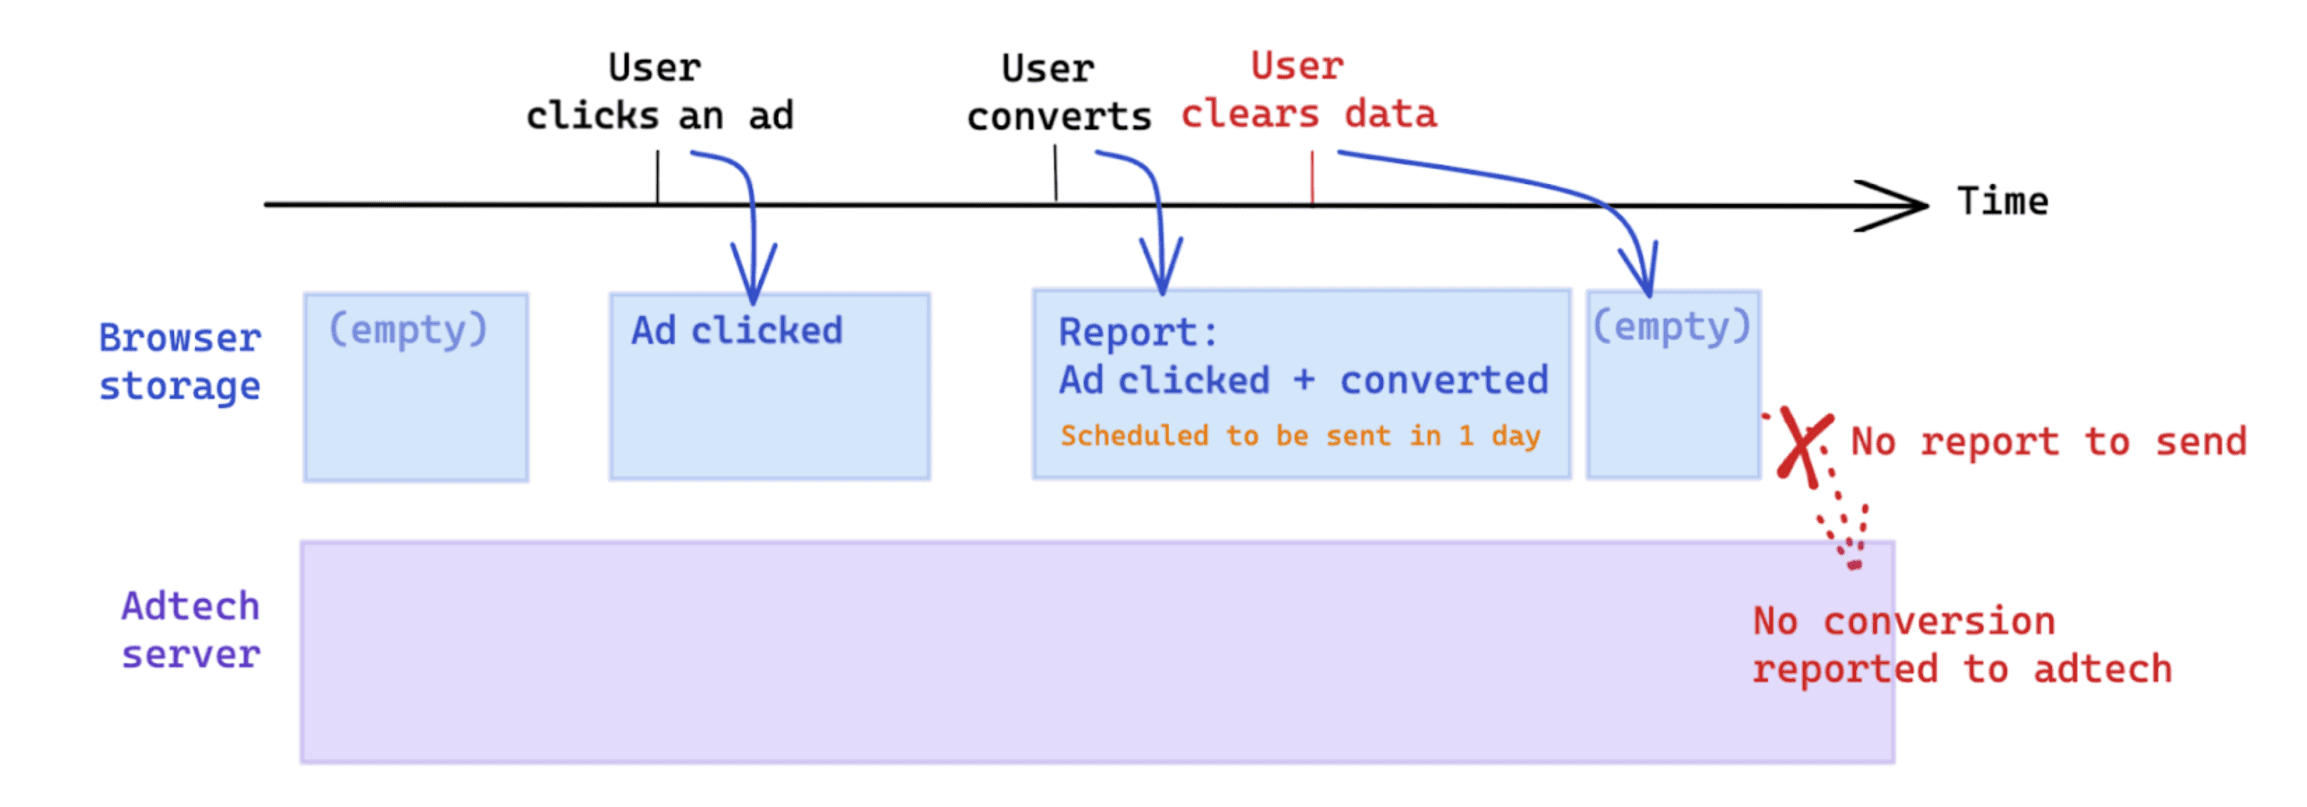 コンバージョン後にユーザーが開始したデータ消去は、Attribution Reporting API に基づく測定に影響します。